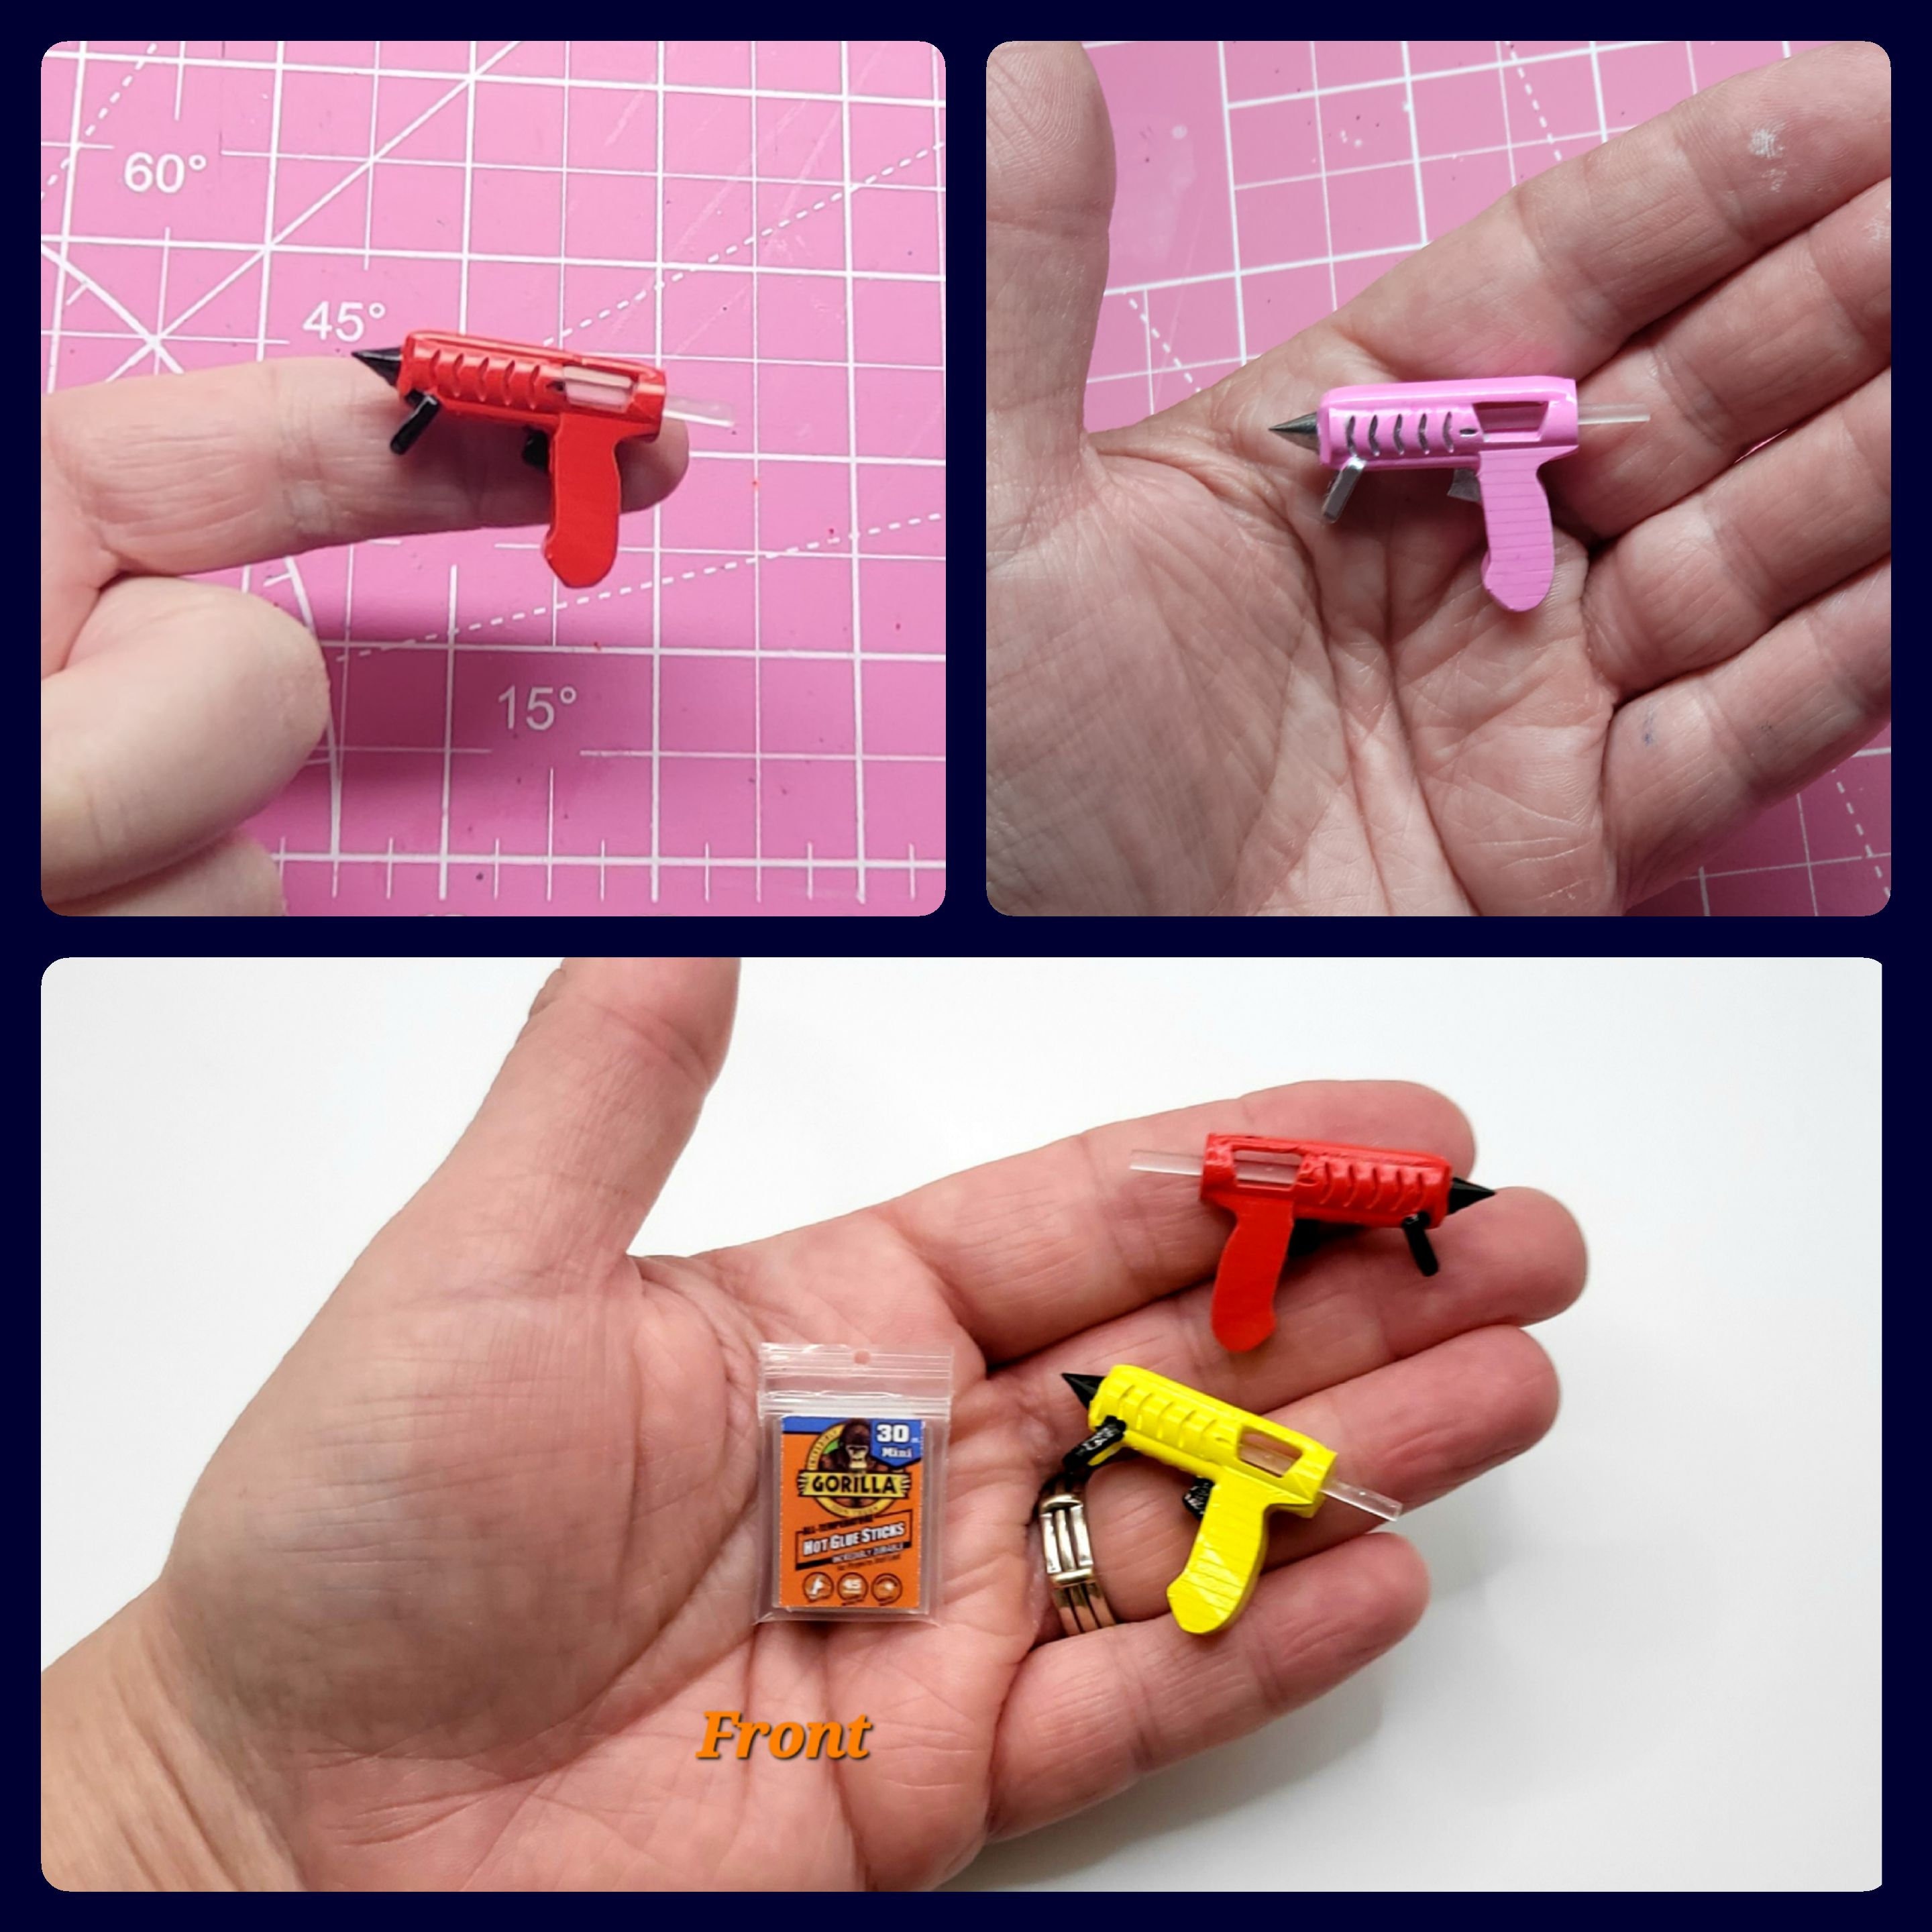 Colored Hot Glue Sticks for Mini Glue Gun 75 Pcs 7mm 100mm 15 Colors Solid Color Hot Glue Sticks